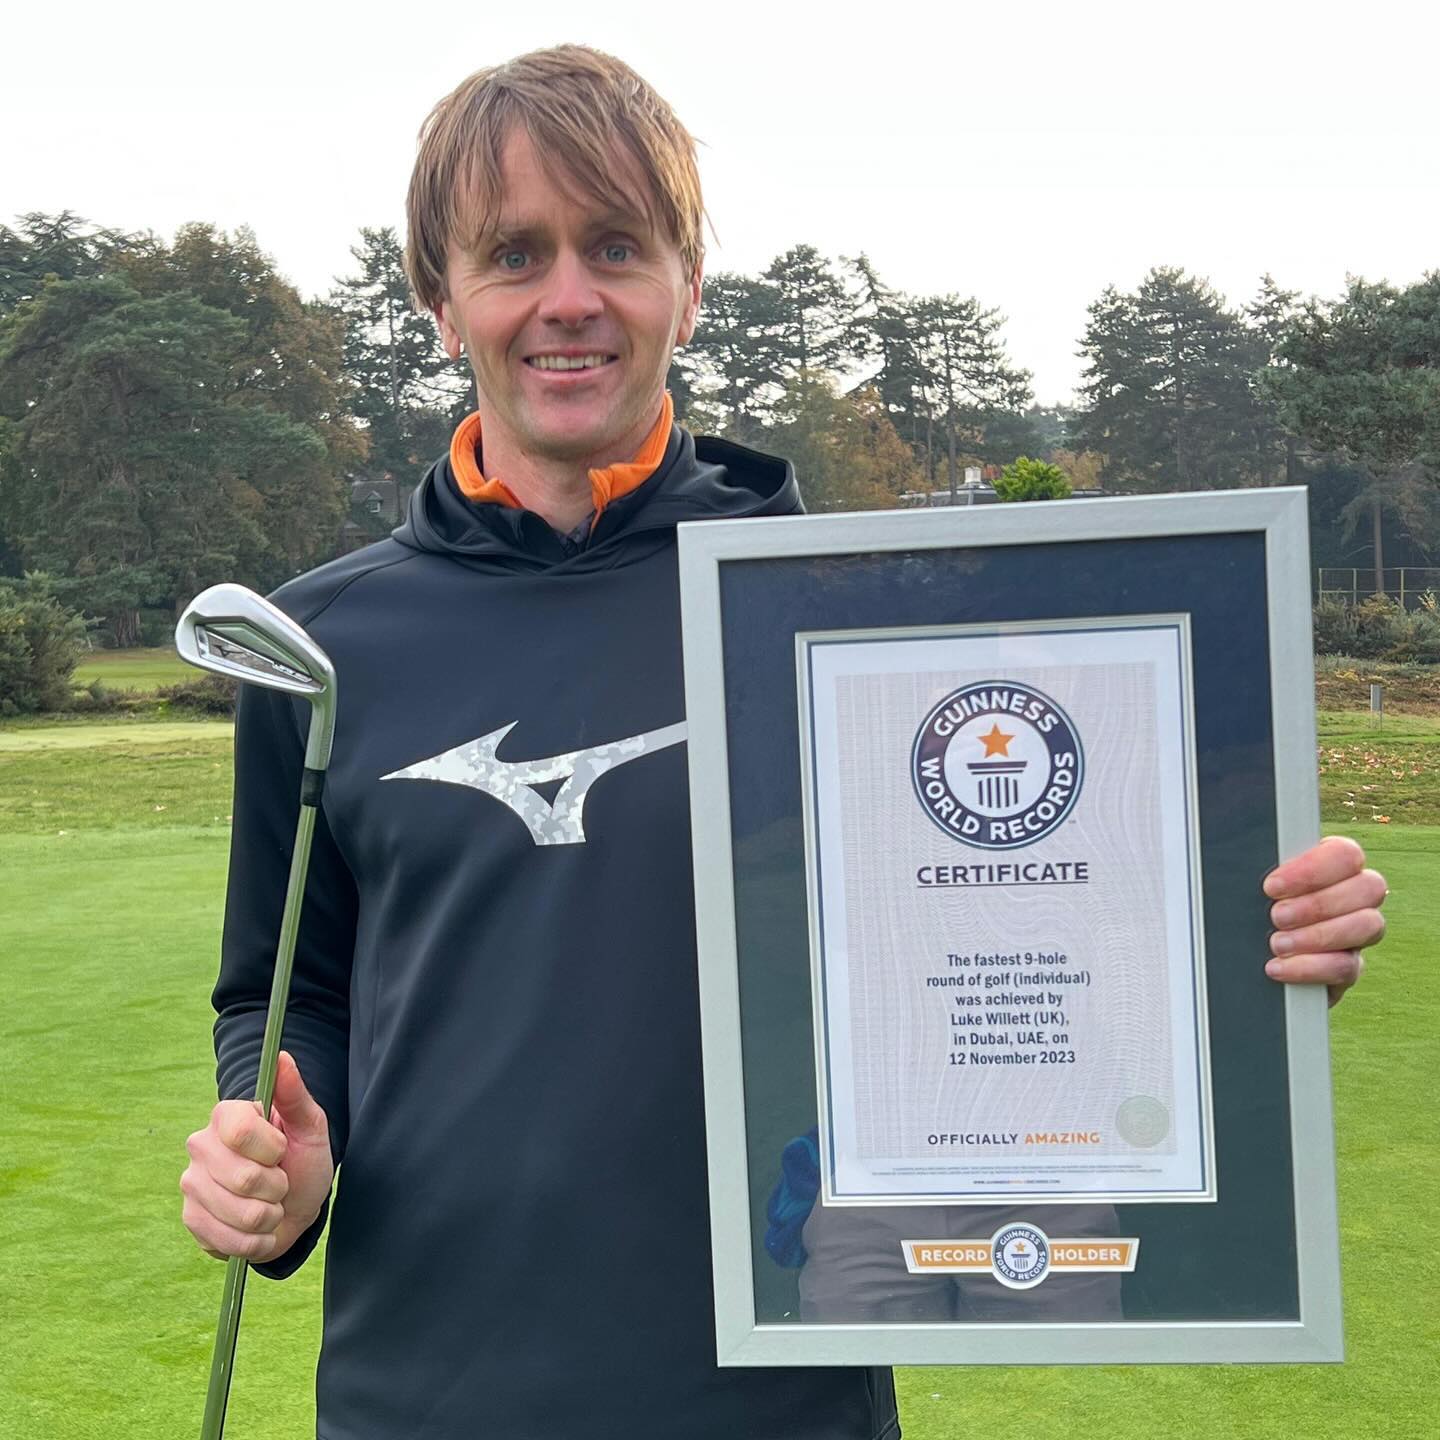 Luke Willett is ’s werelds snelste golfer - Blog